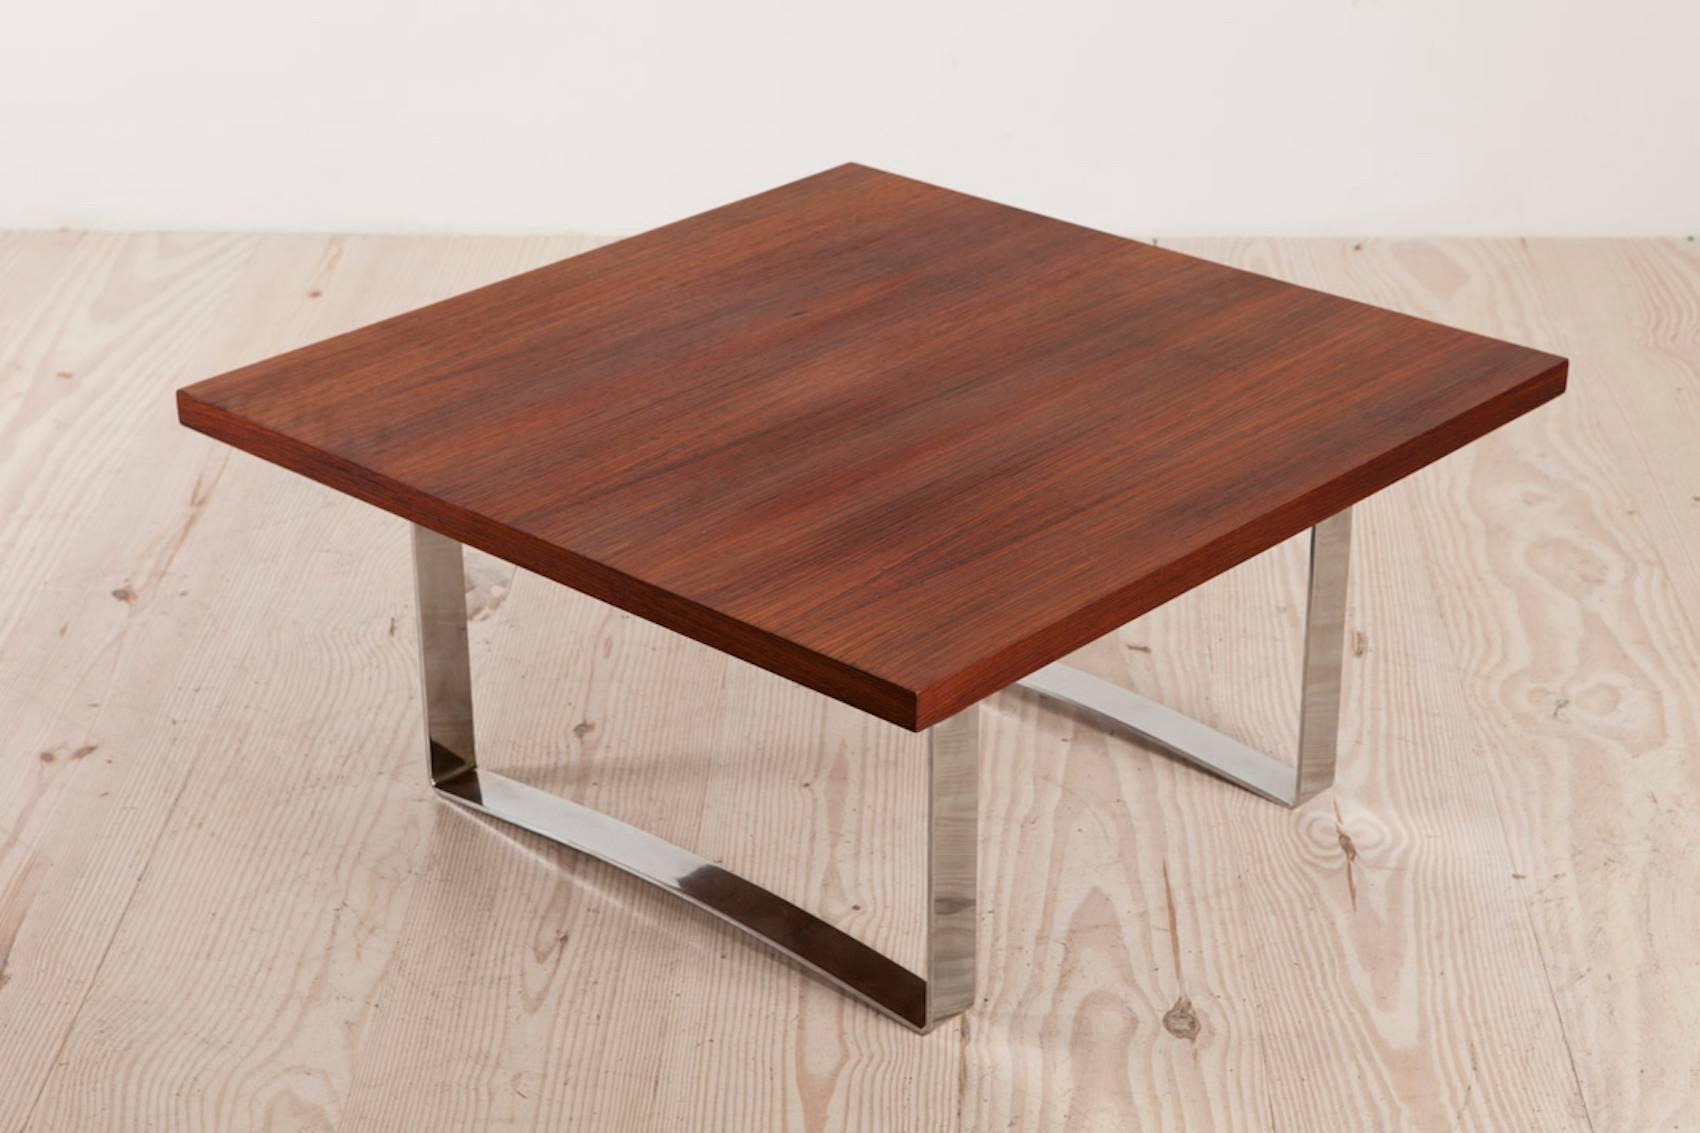 Bodil Kjaer (1932 Danemark - 1960), rare table basse carrée en bois de rose avec cadre en acier chromé, vers 1959. Le plateau carré en bois de rose repose sur deux pieds en forme de U en acier chromé.